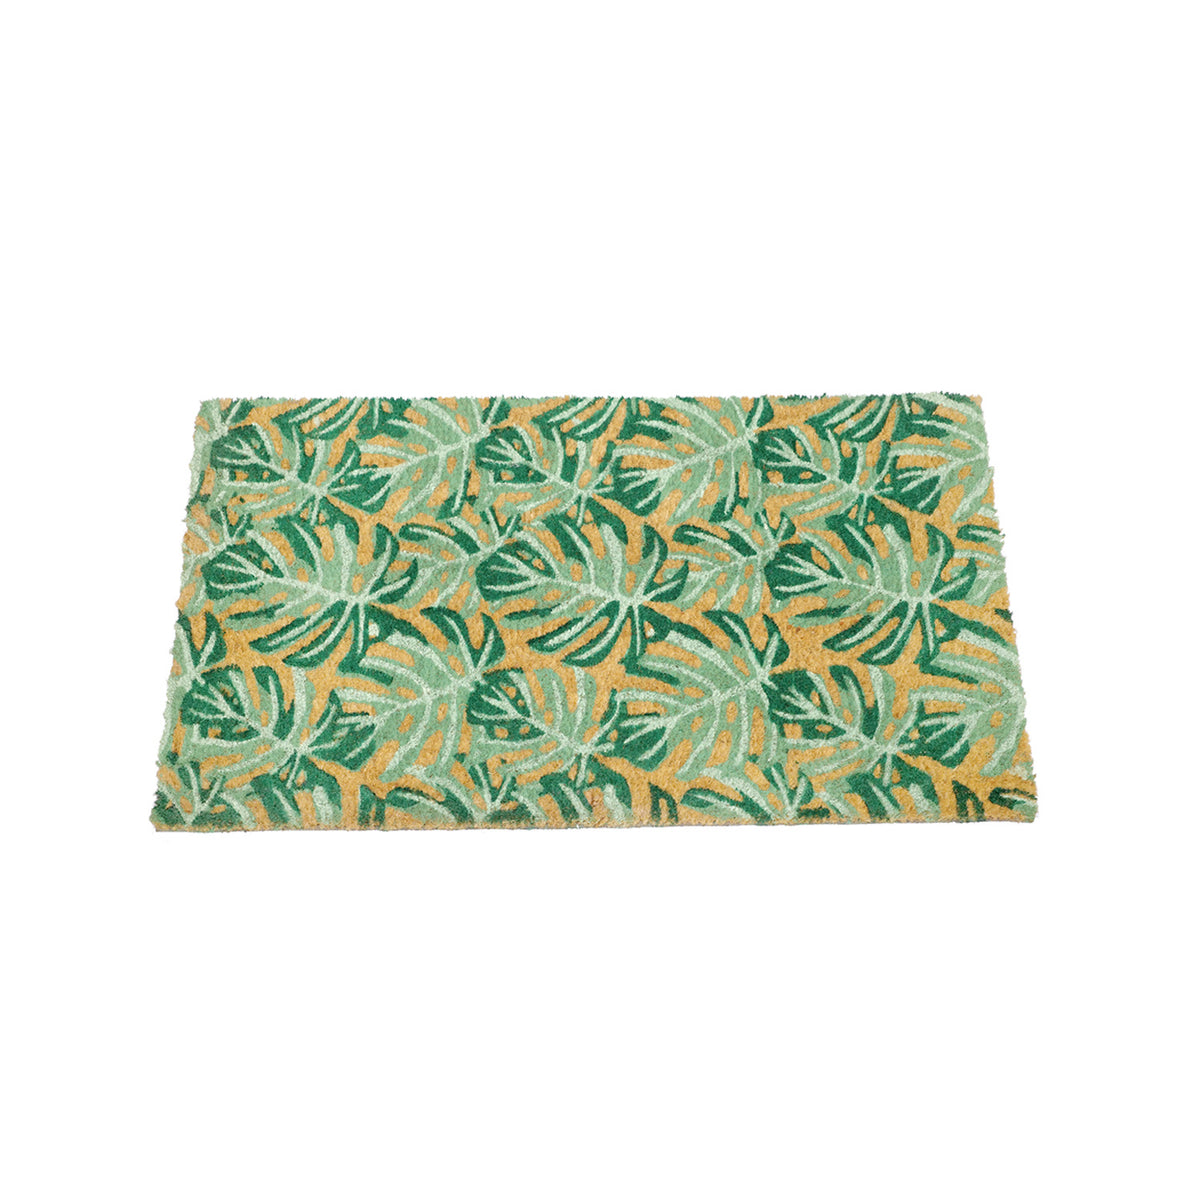 OnlyMat Fern Leaves Green Design Natural Printed Coir Floor Mat